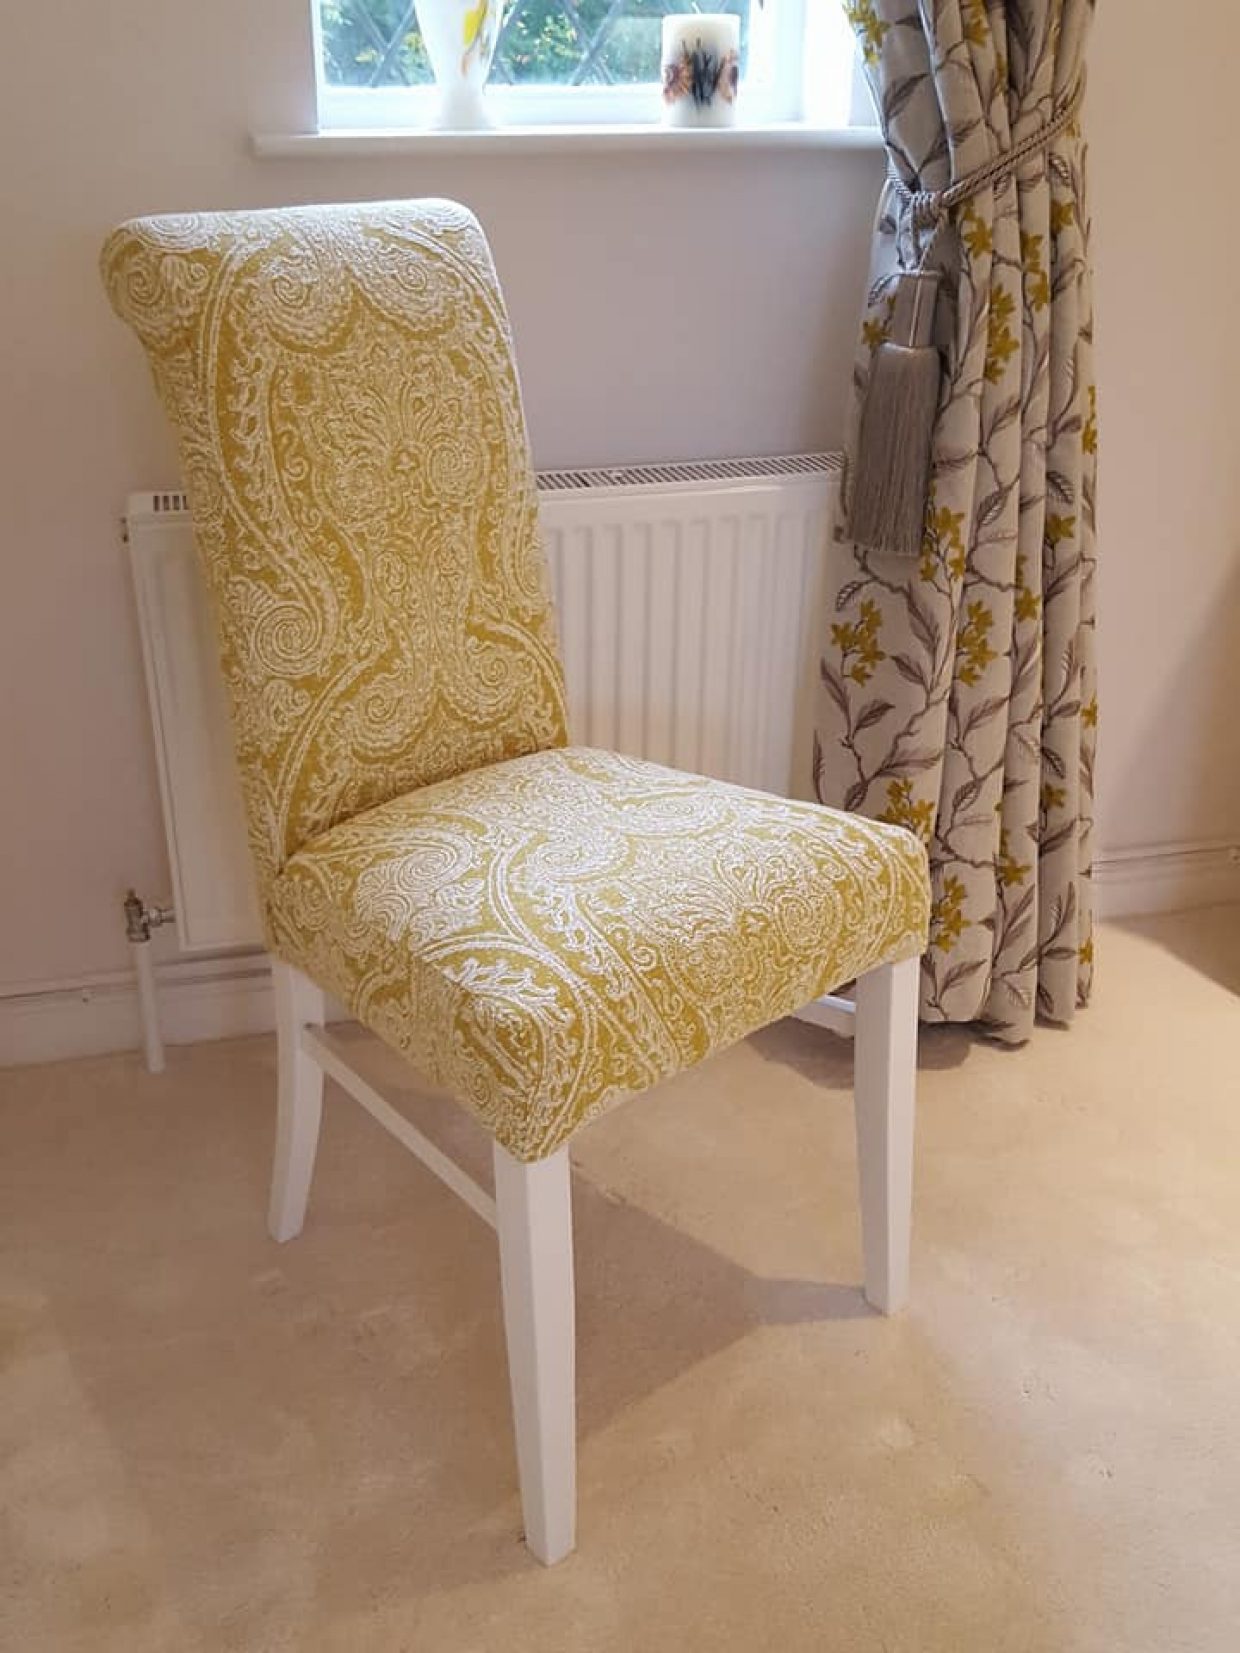 Custom chair, curtain and blind